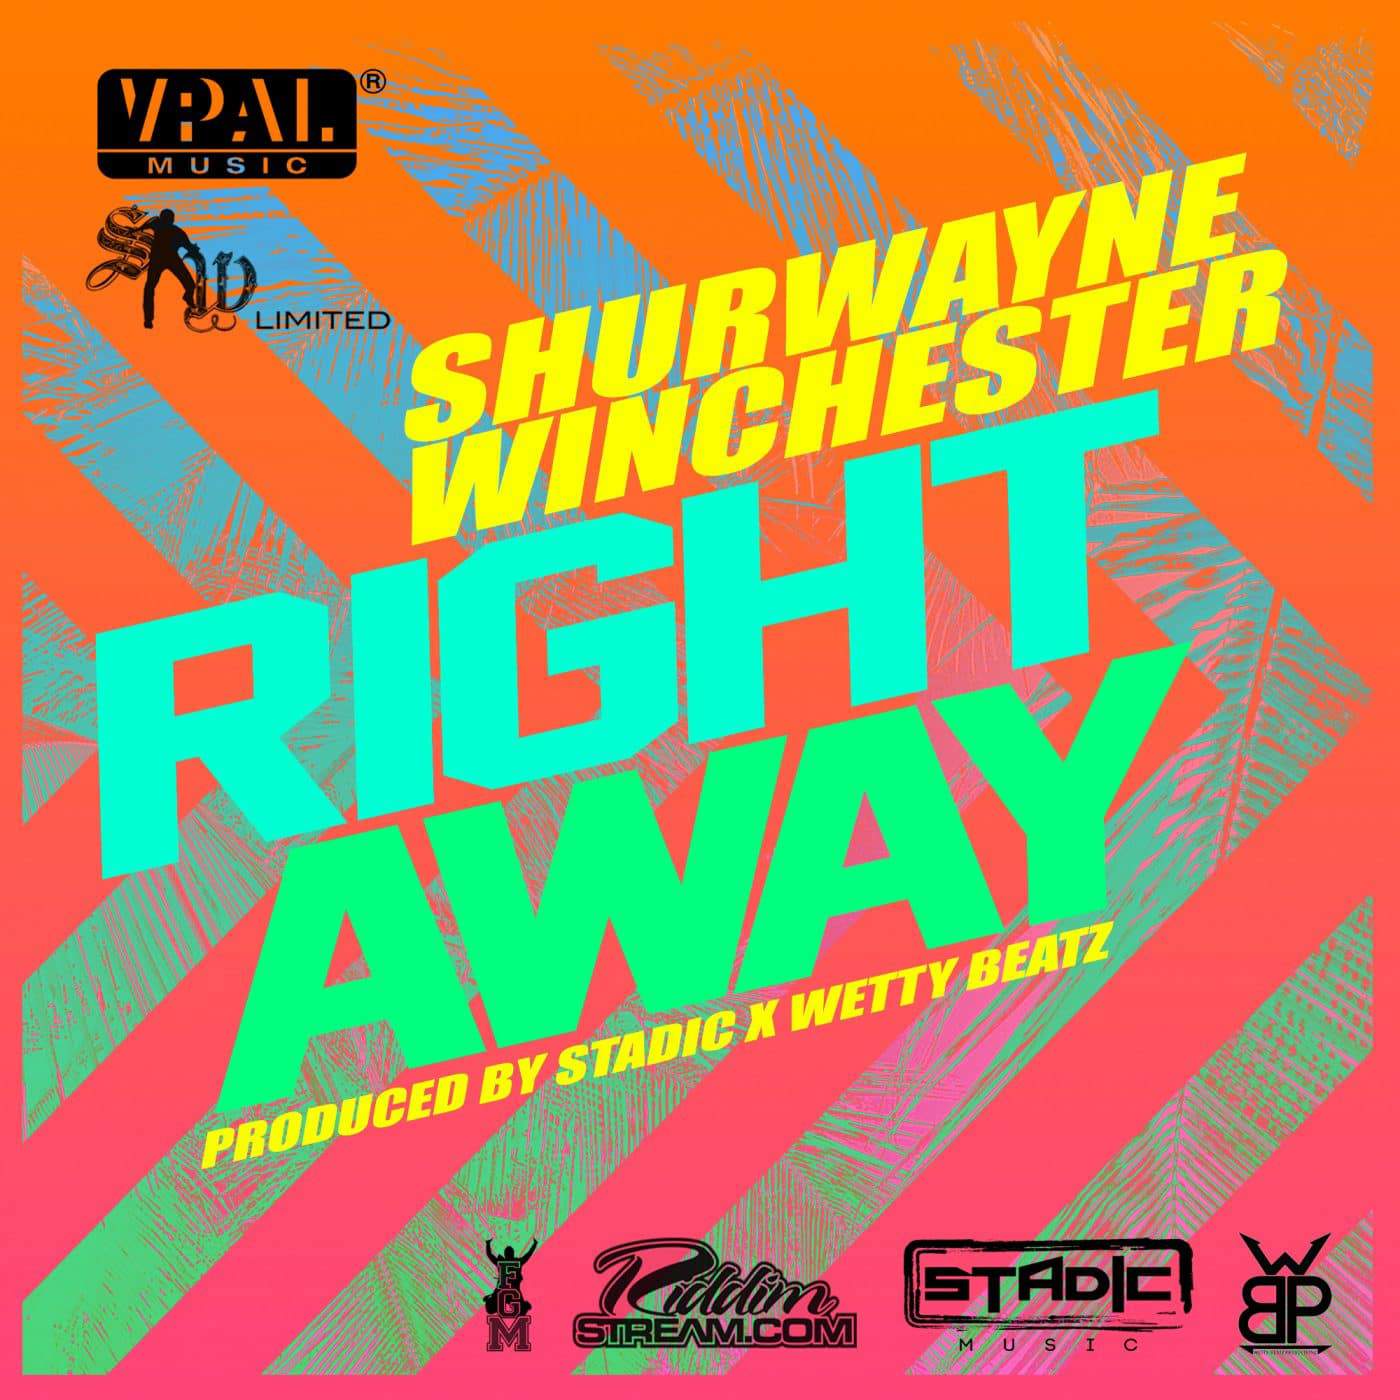 Shurwayne Winchester - Right Away - Stadic x Wetty Beatz - 2017 Afrosoca